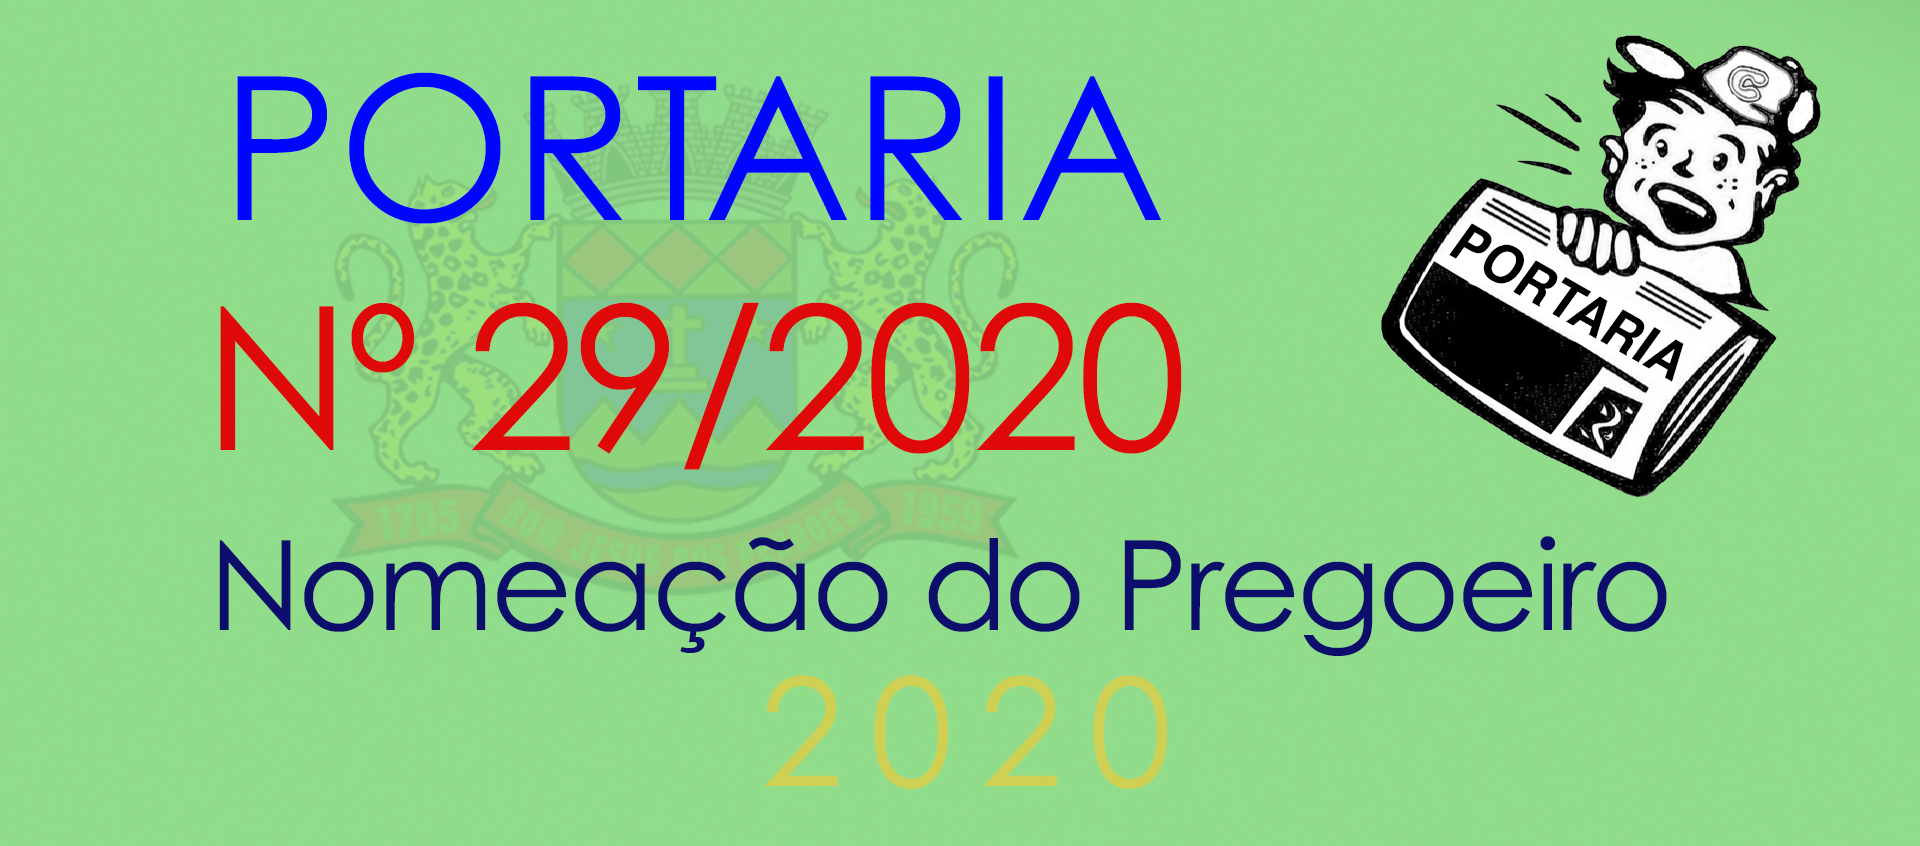 Portaria 29/2020